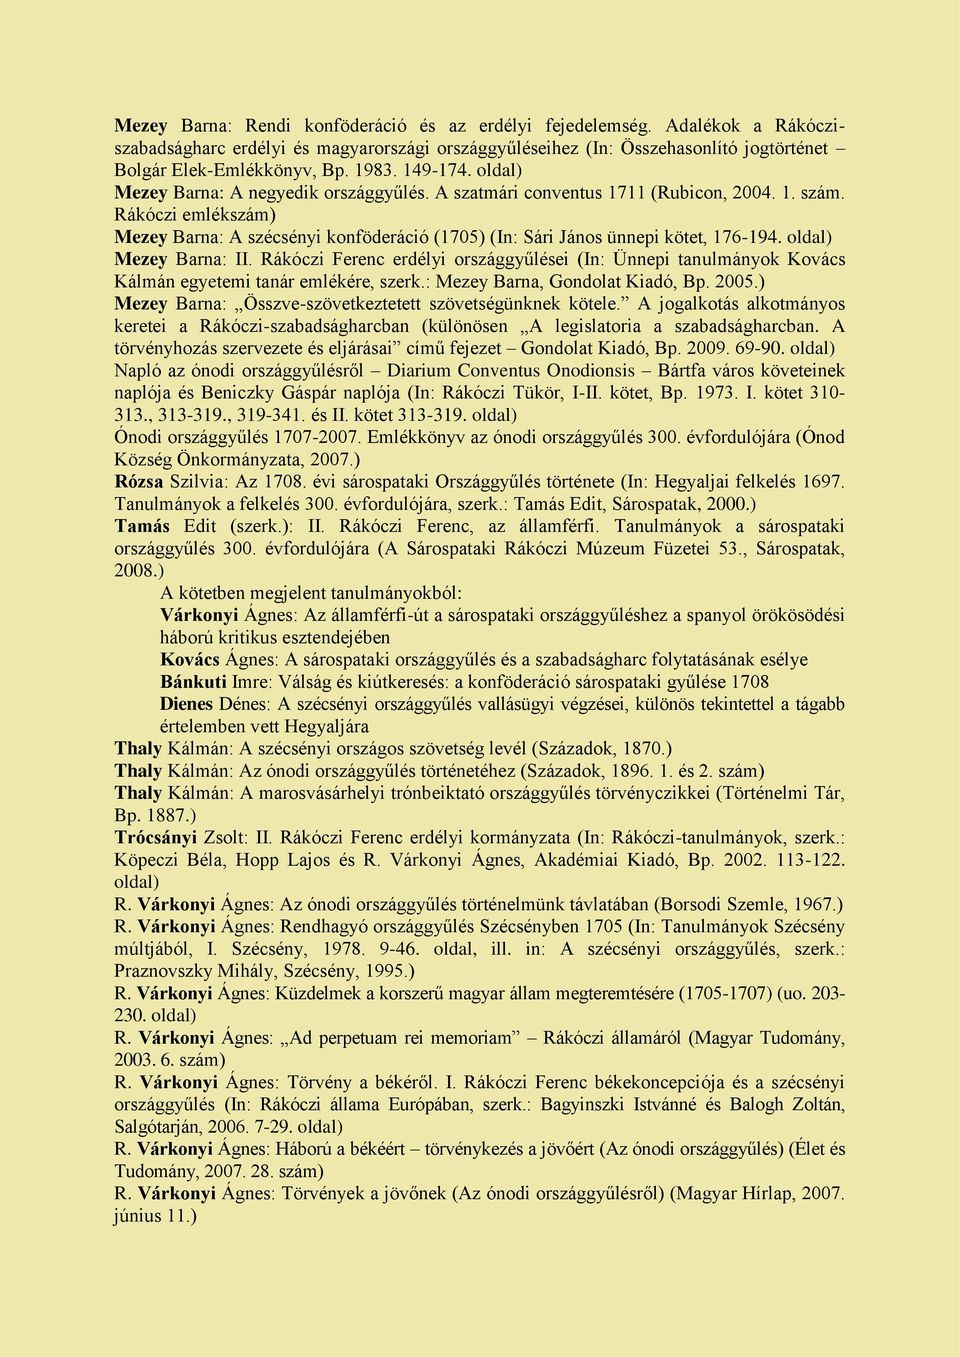 Rákóczi emlékszám) Mezey Barna: A szécsényi konföderáció (1705) (In: Sári János ünnepi kötet, 176-194. oldal) Mezey Barna: II.